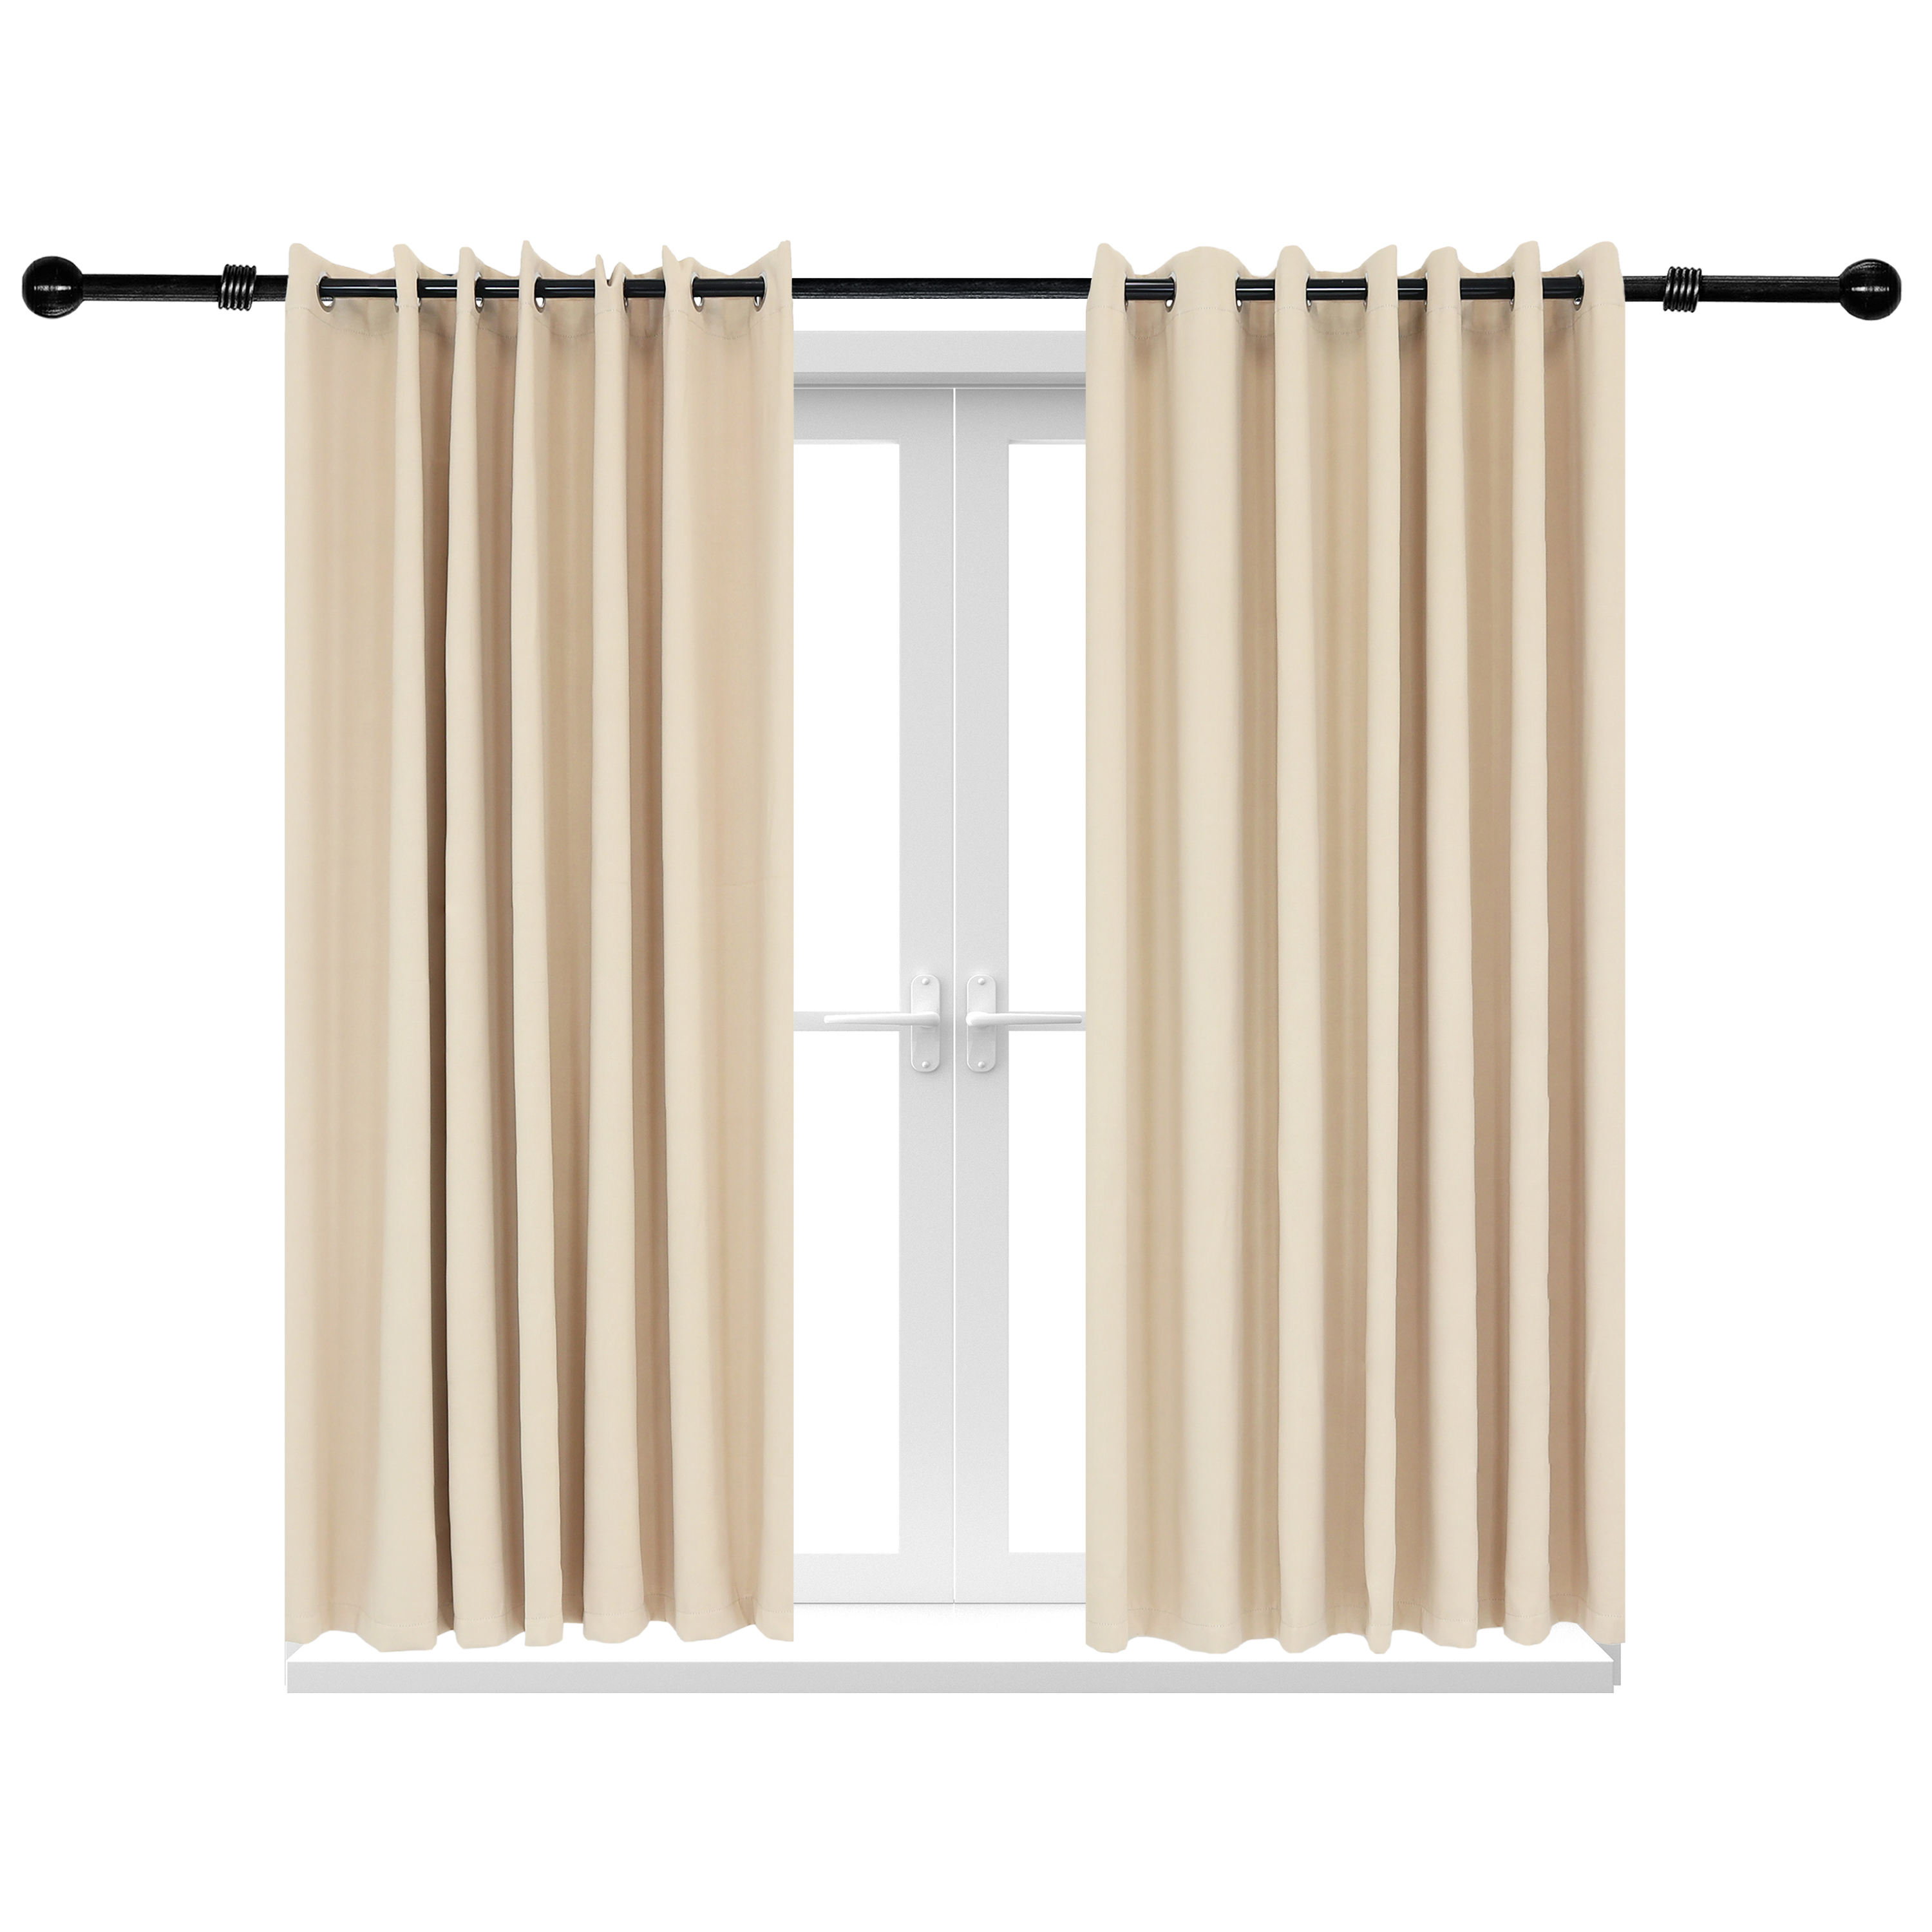 2 Indoor/Outdoor Blackout Curtain Panels with Grommet Top - 100 x 84 in (2.54 x 2.13 m) - Beige